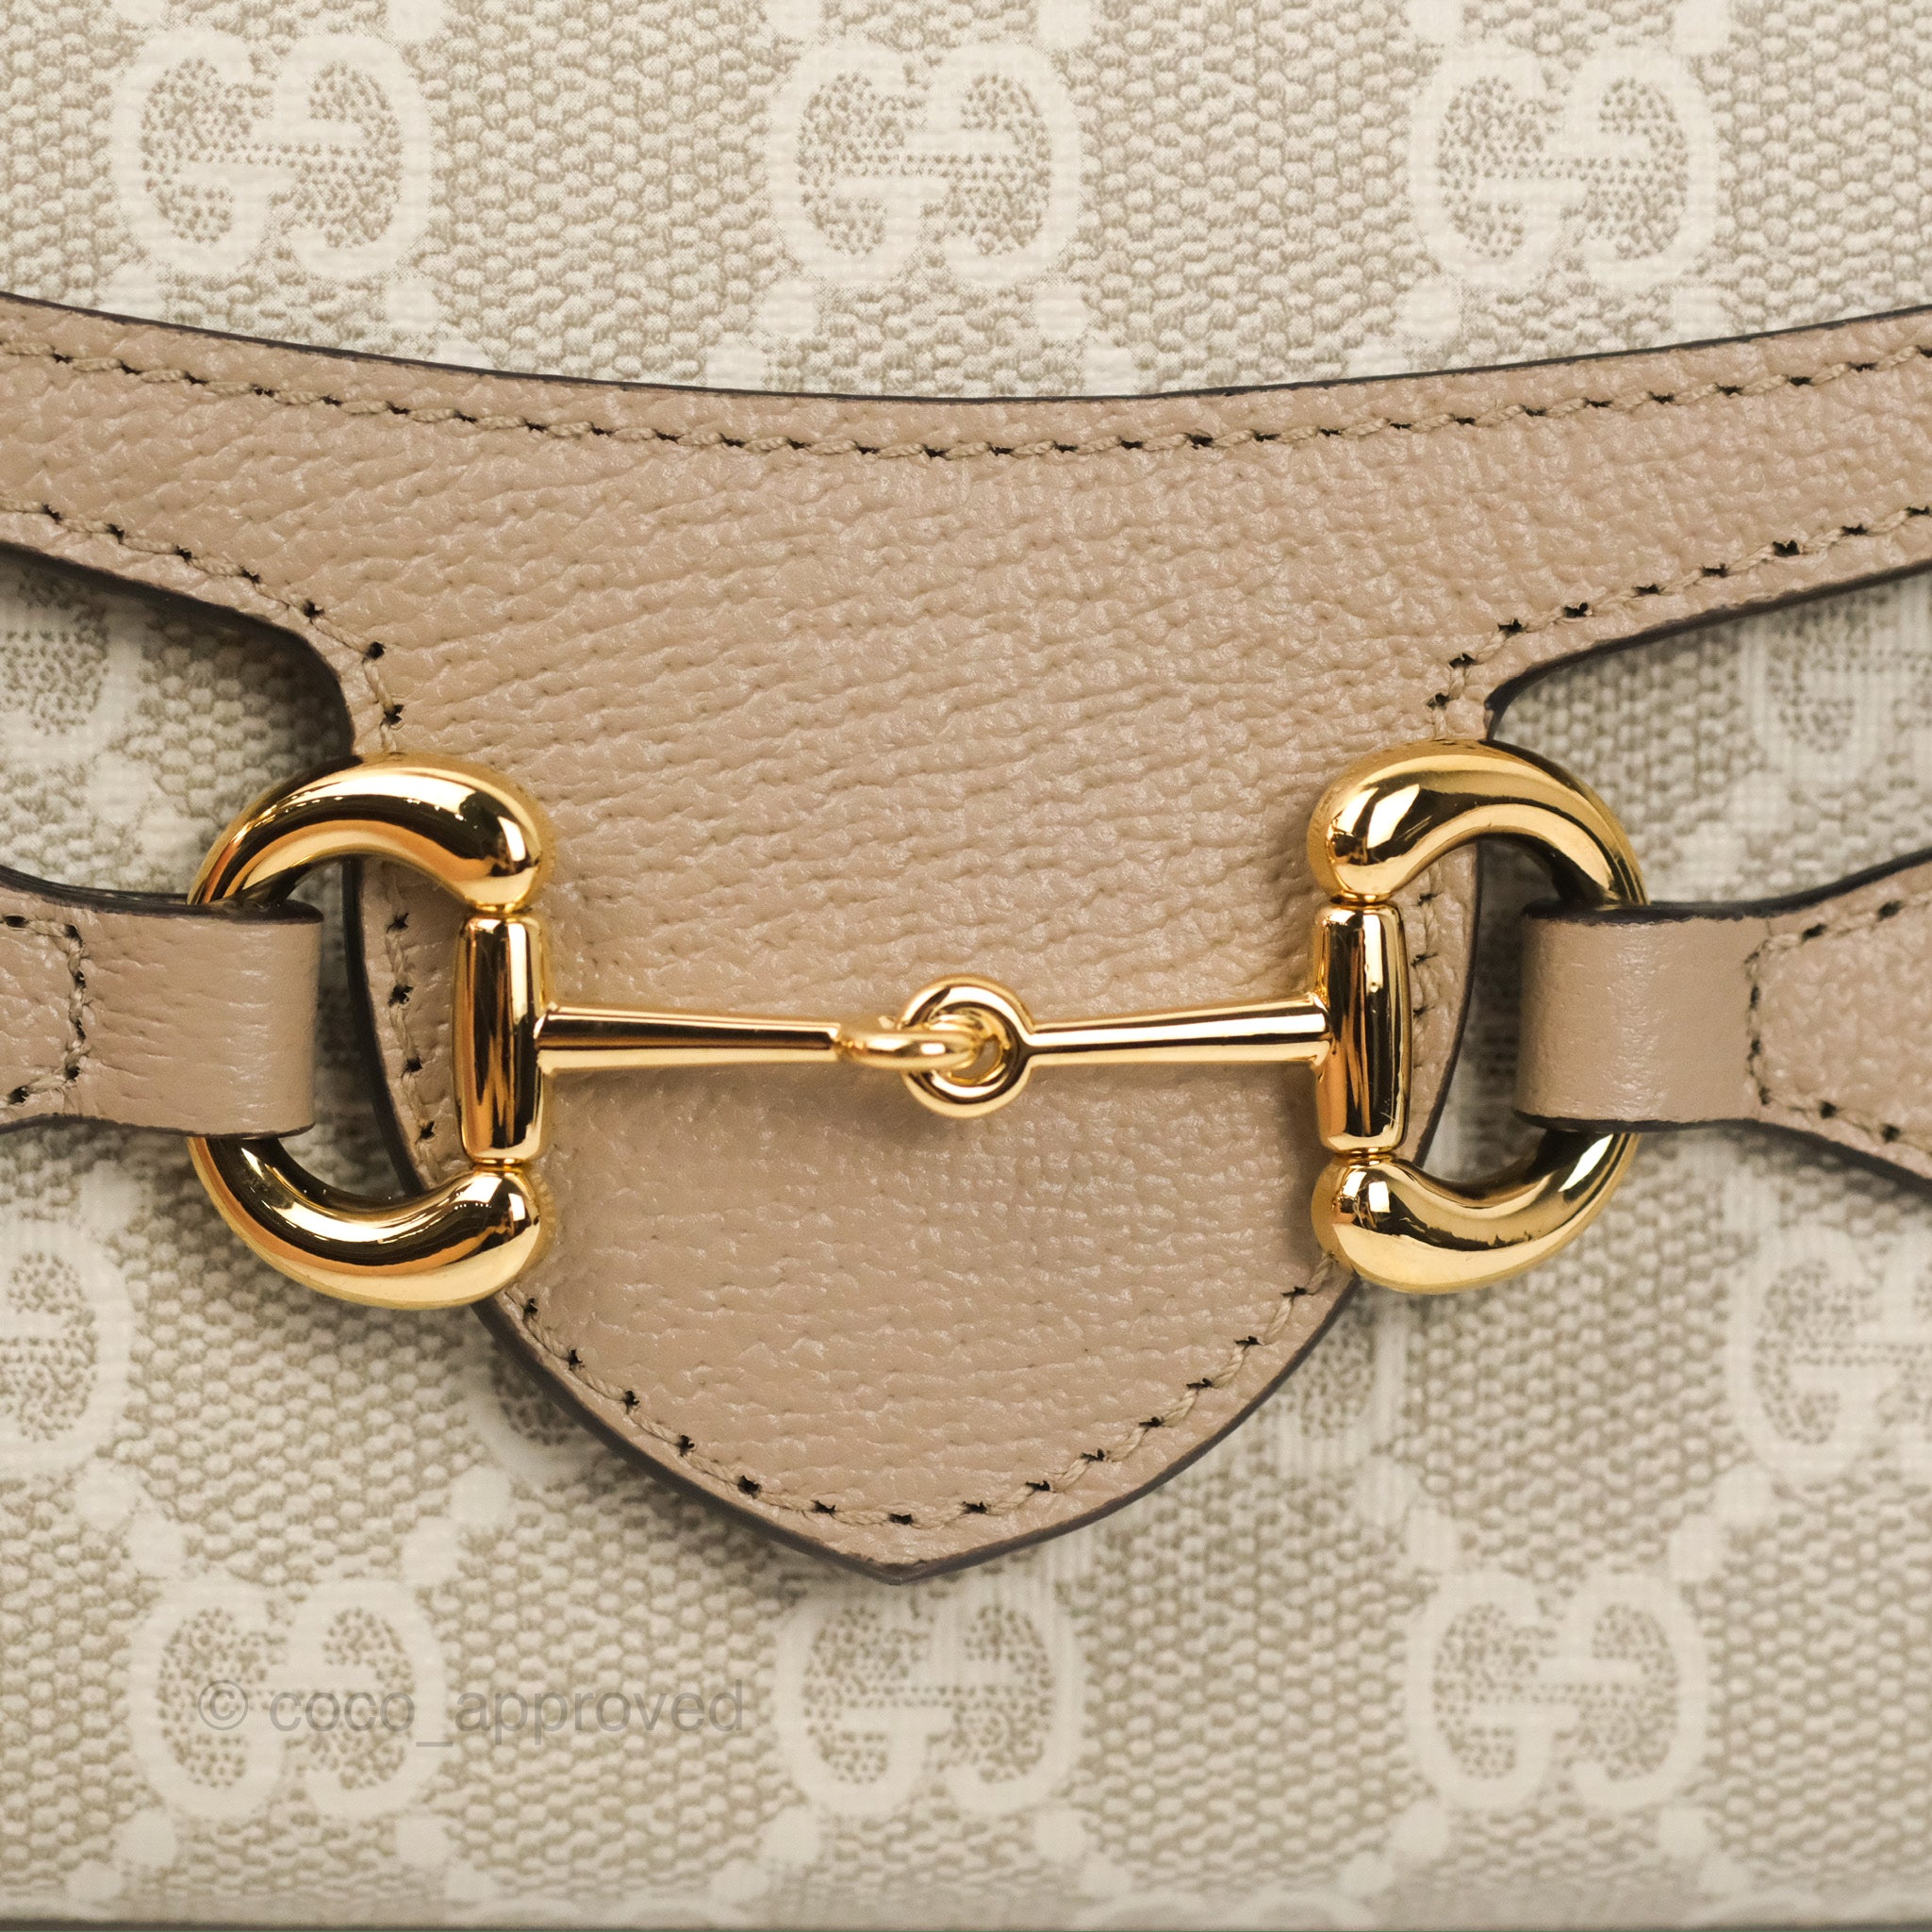 Gucci Horsebit 1955 Shoulder Bag - Beige